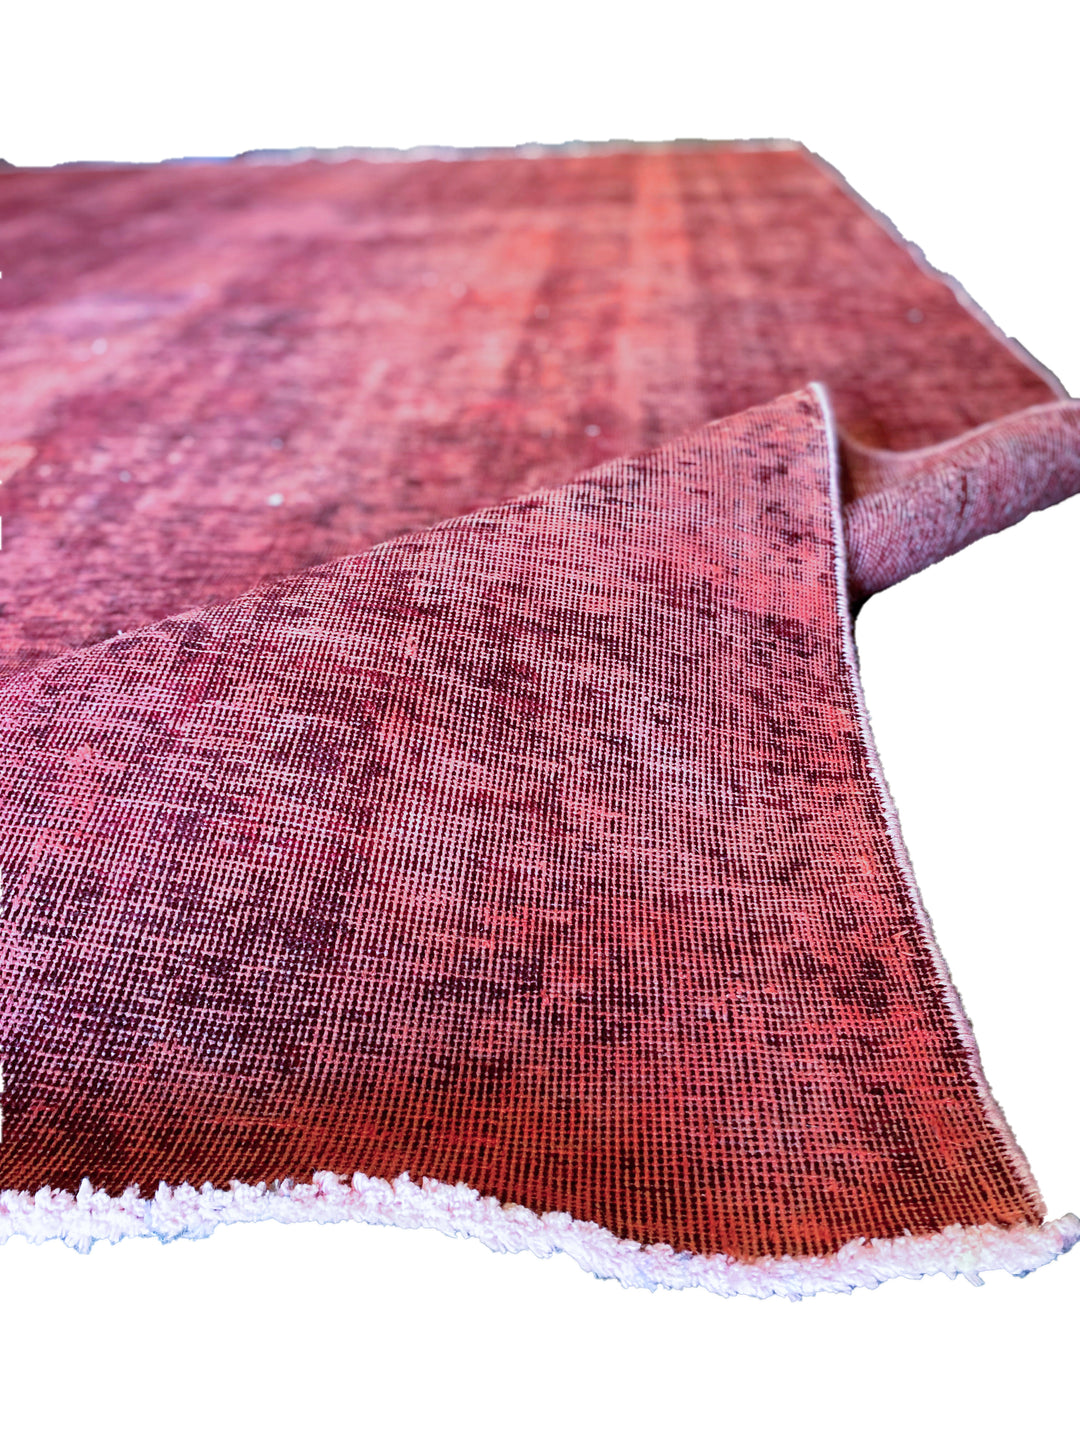 Setareh - Size: 11.7 x 8.8 - Imam Carpet Co